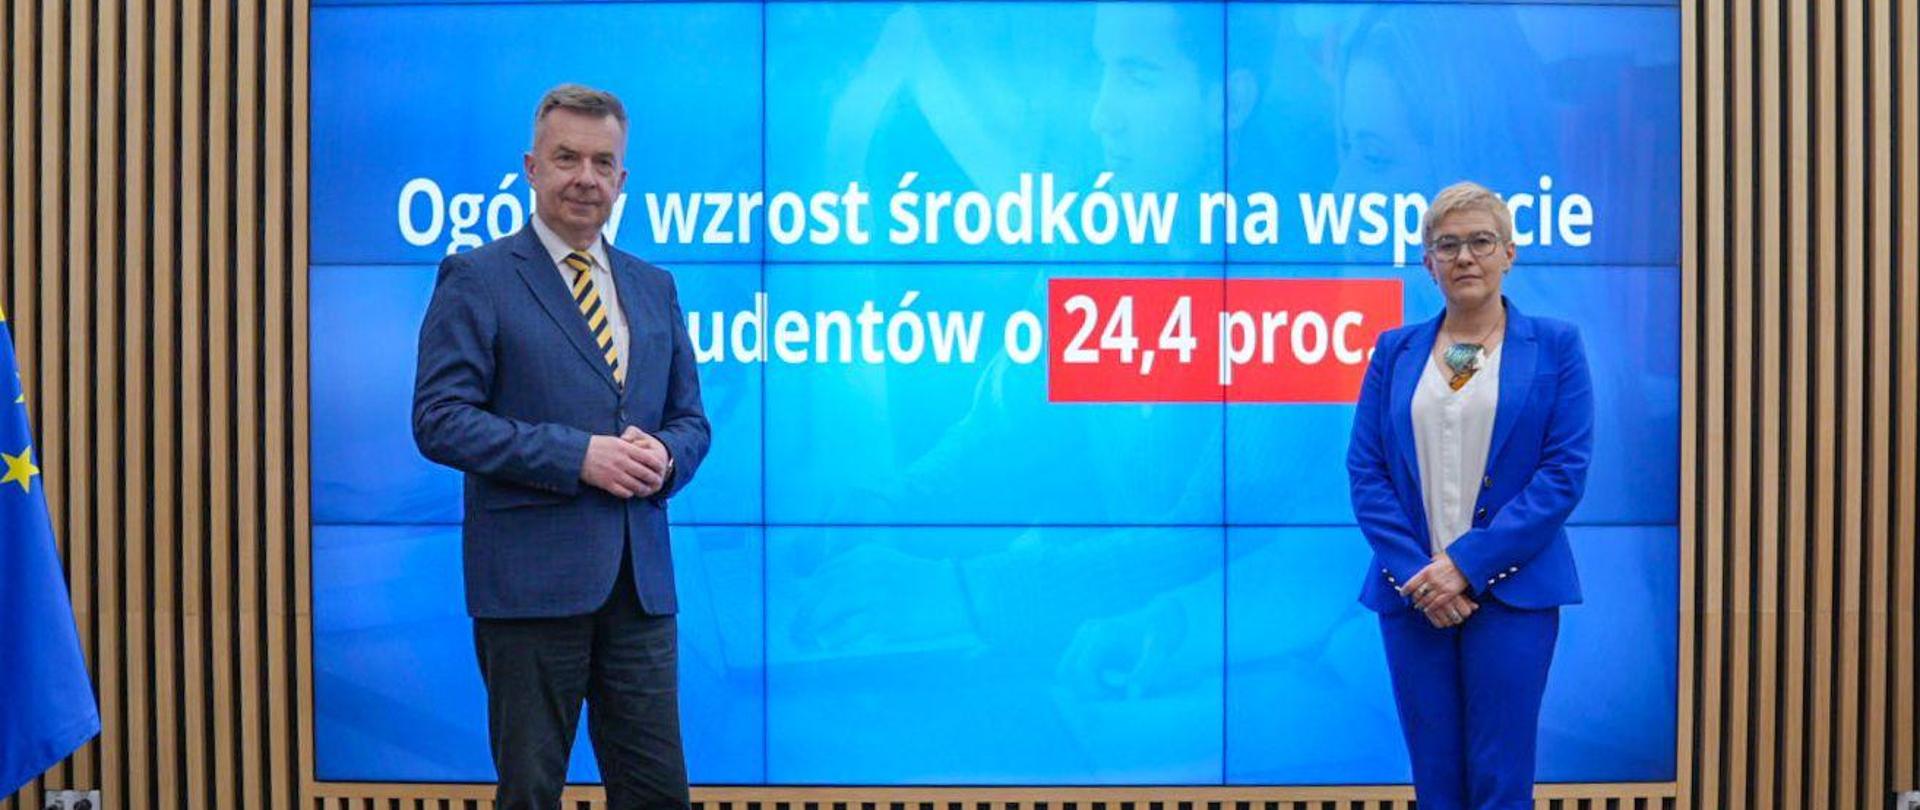 Minister Wieczorek i wiceminister Mrówczyńska stoją na sali, za nimi na wbudowanym w ścianę wielkim ekranie napis Ogólny wzrost środków na wsparcie studentów o 24,4 proc.